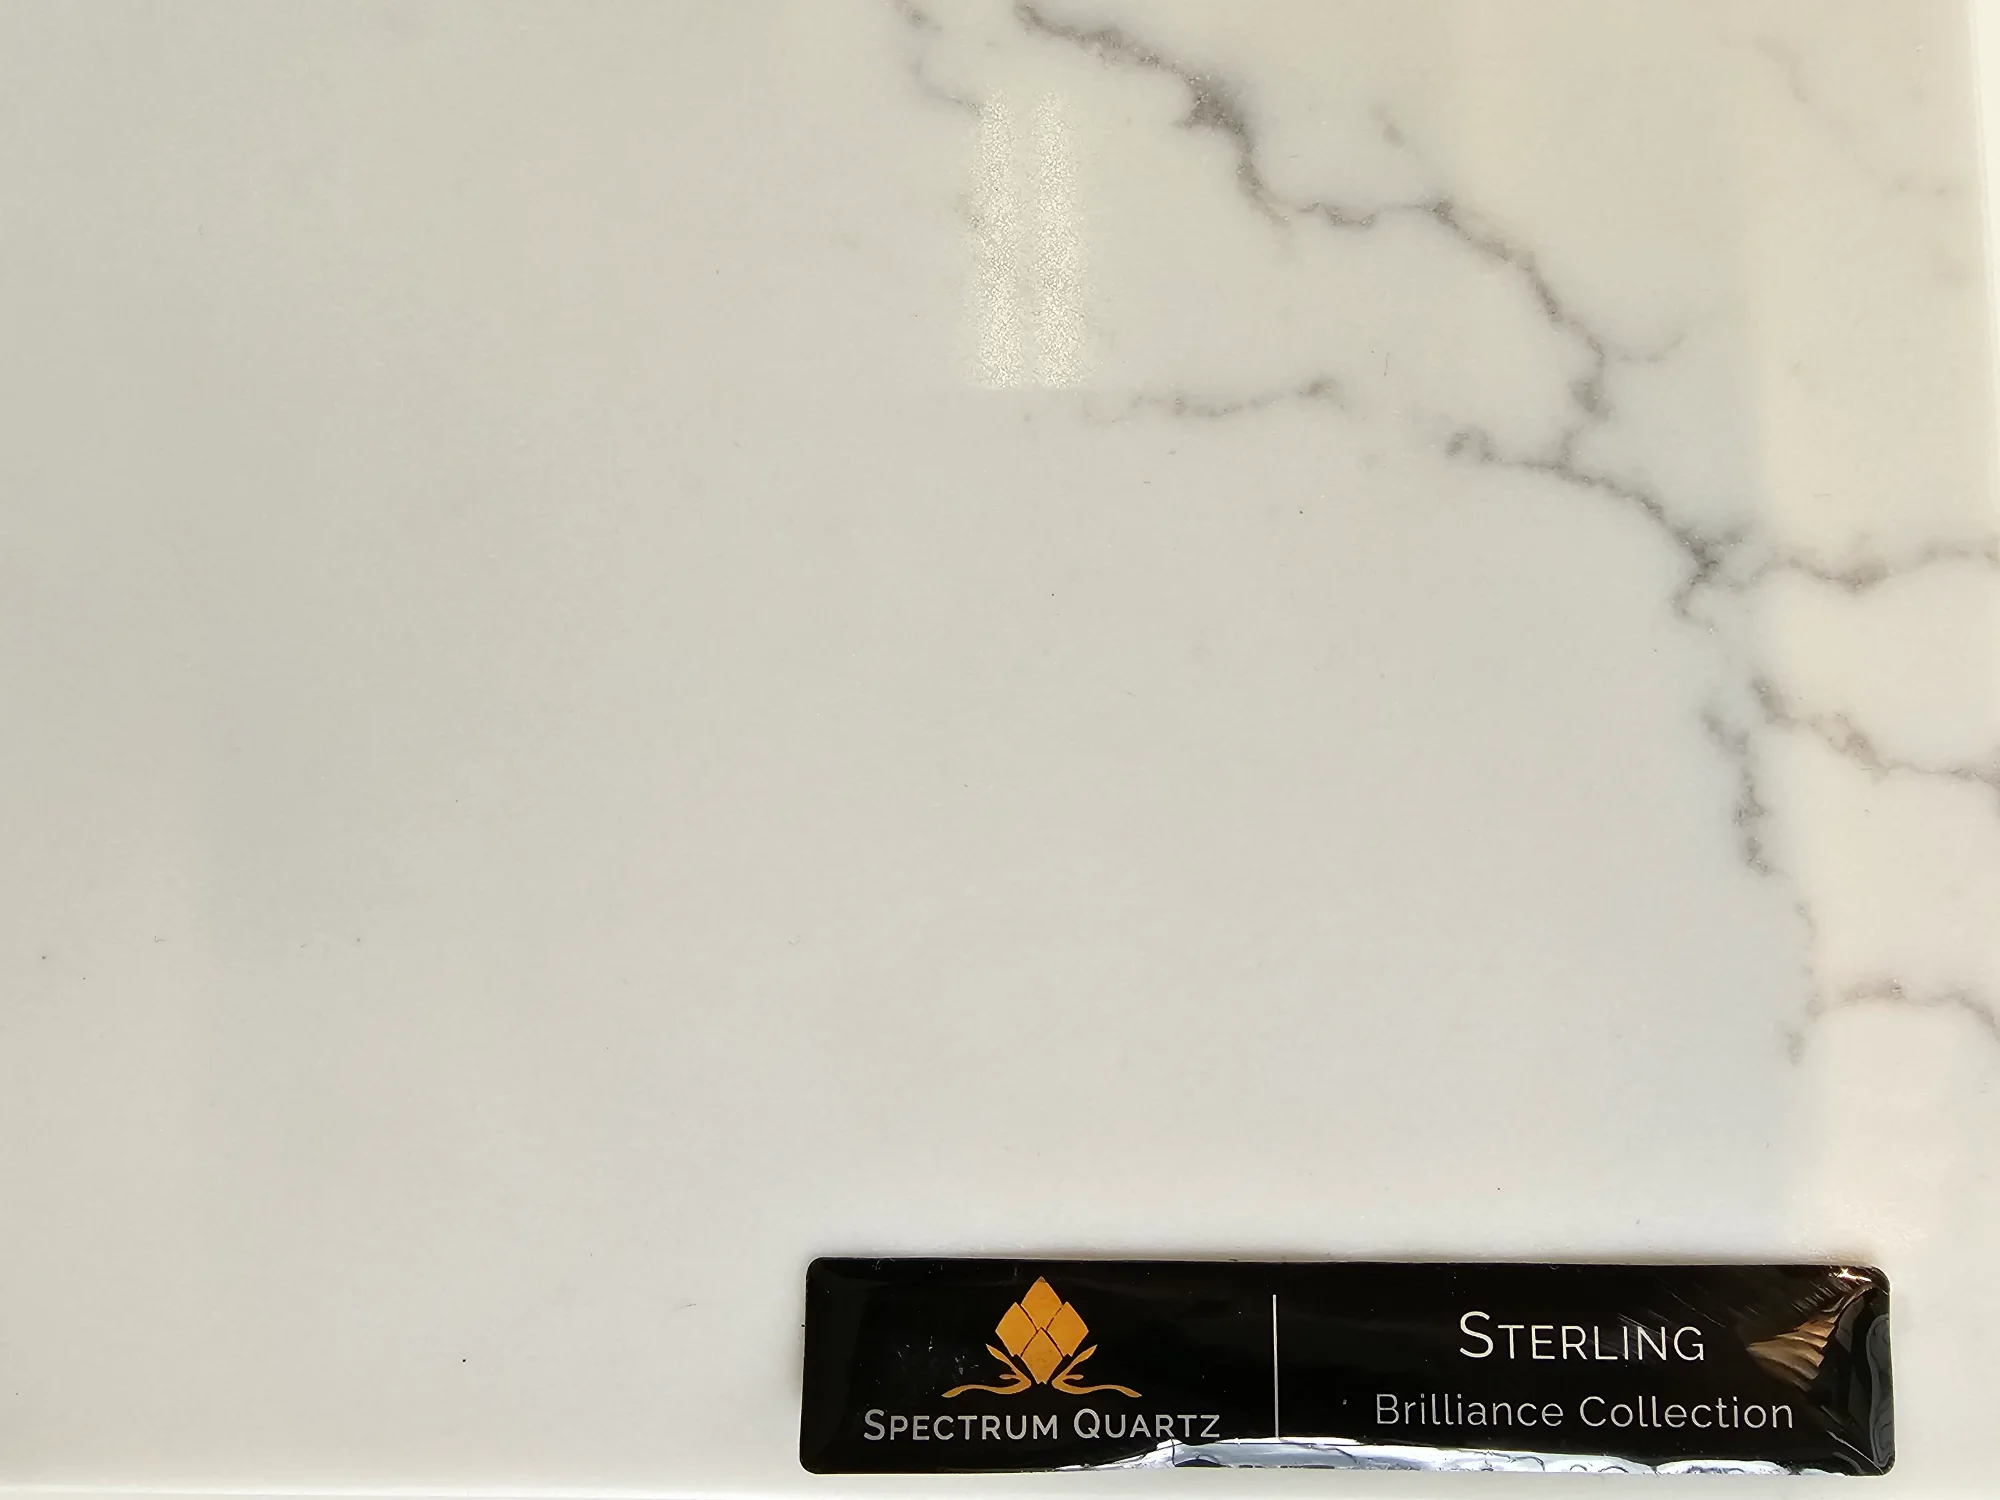 Sterling spectrum quartz countertop